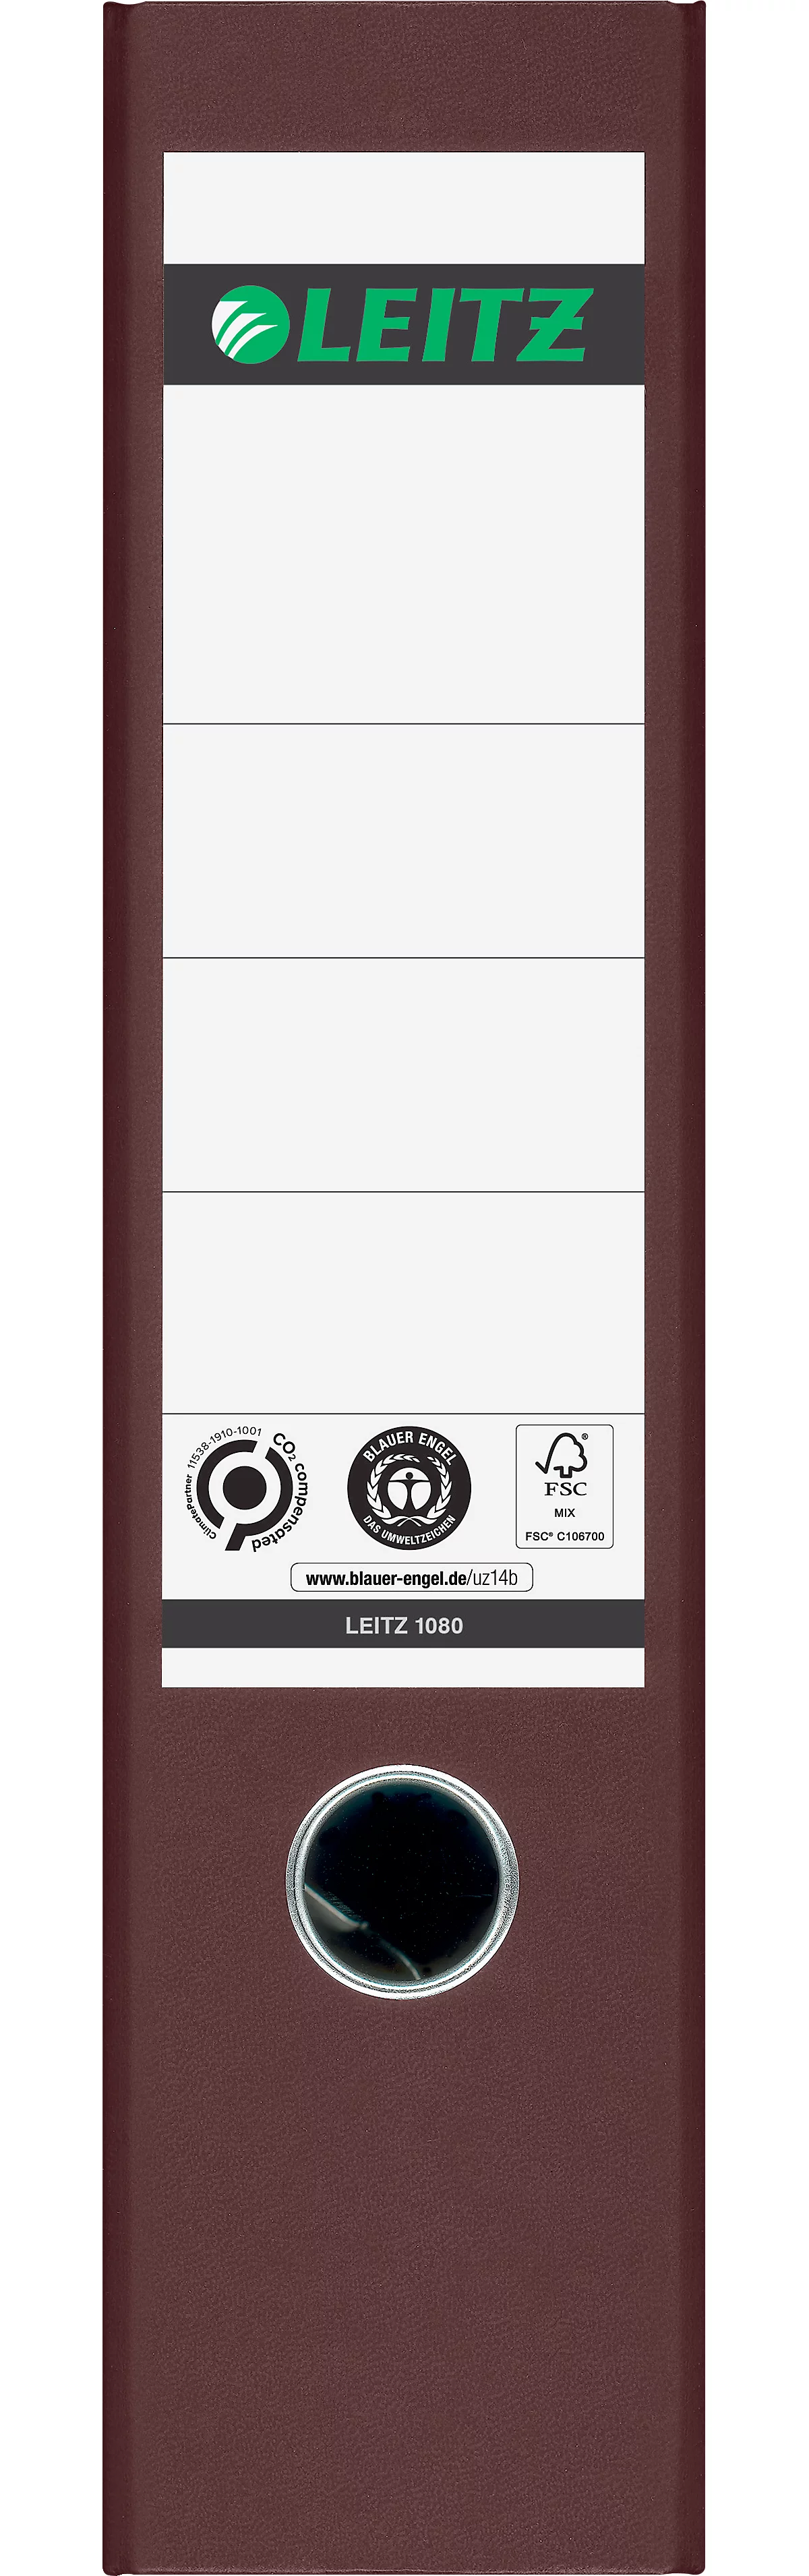 LEITZ® ordner 1080, A4, rugbreedte 80 mm, 20 stuks, bruin